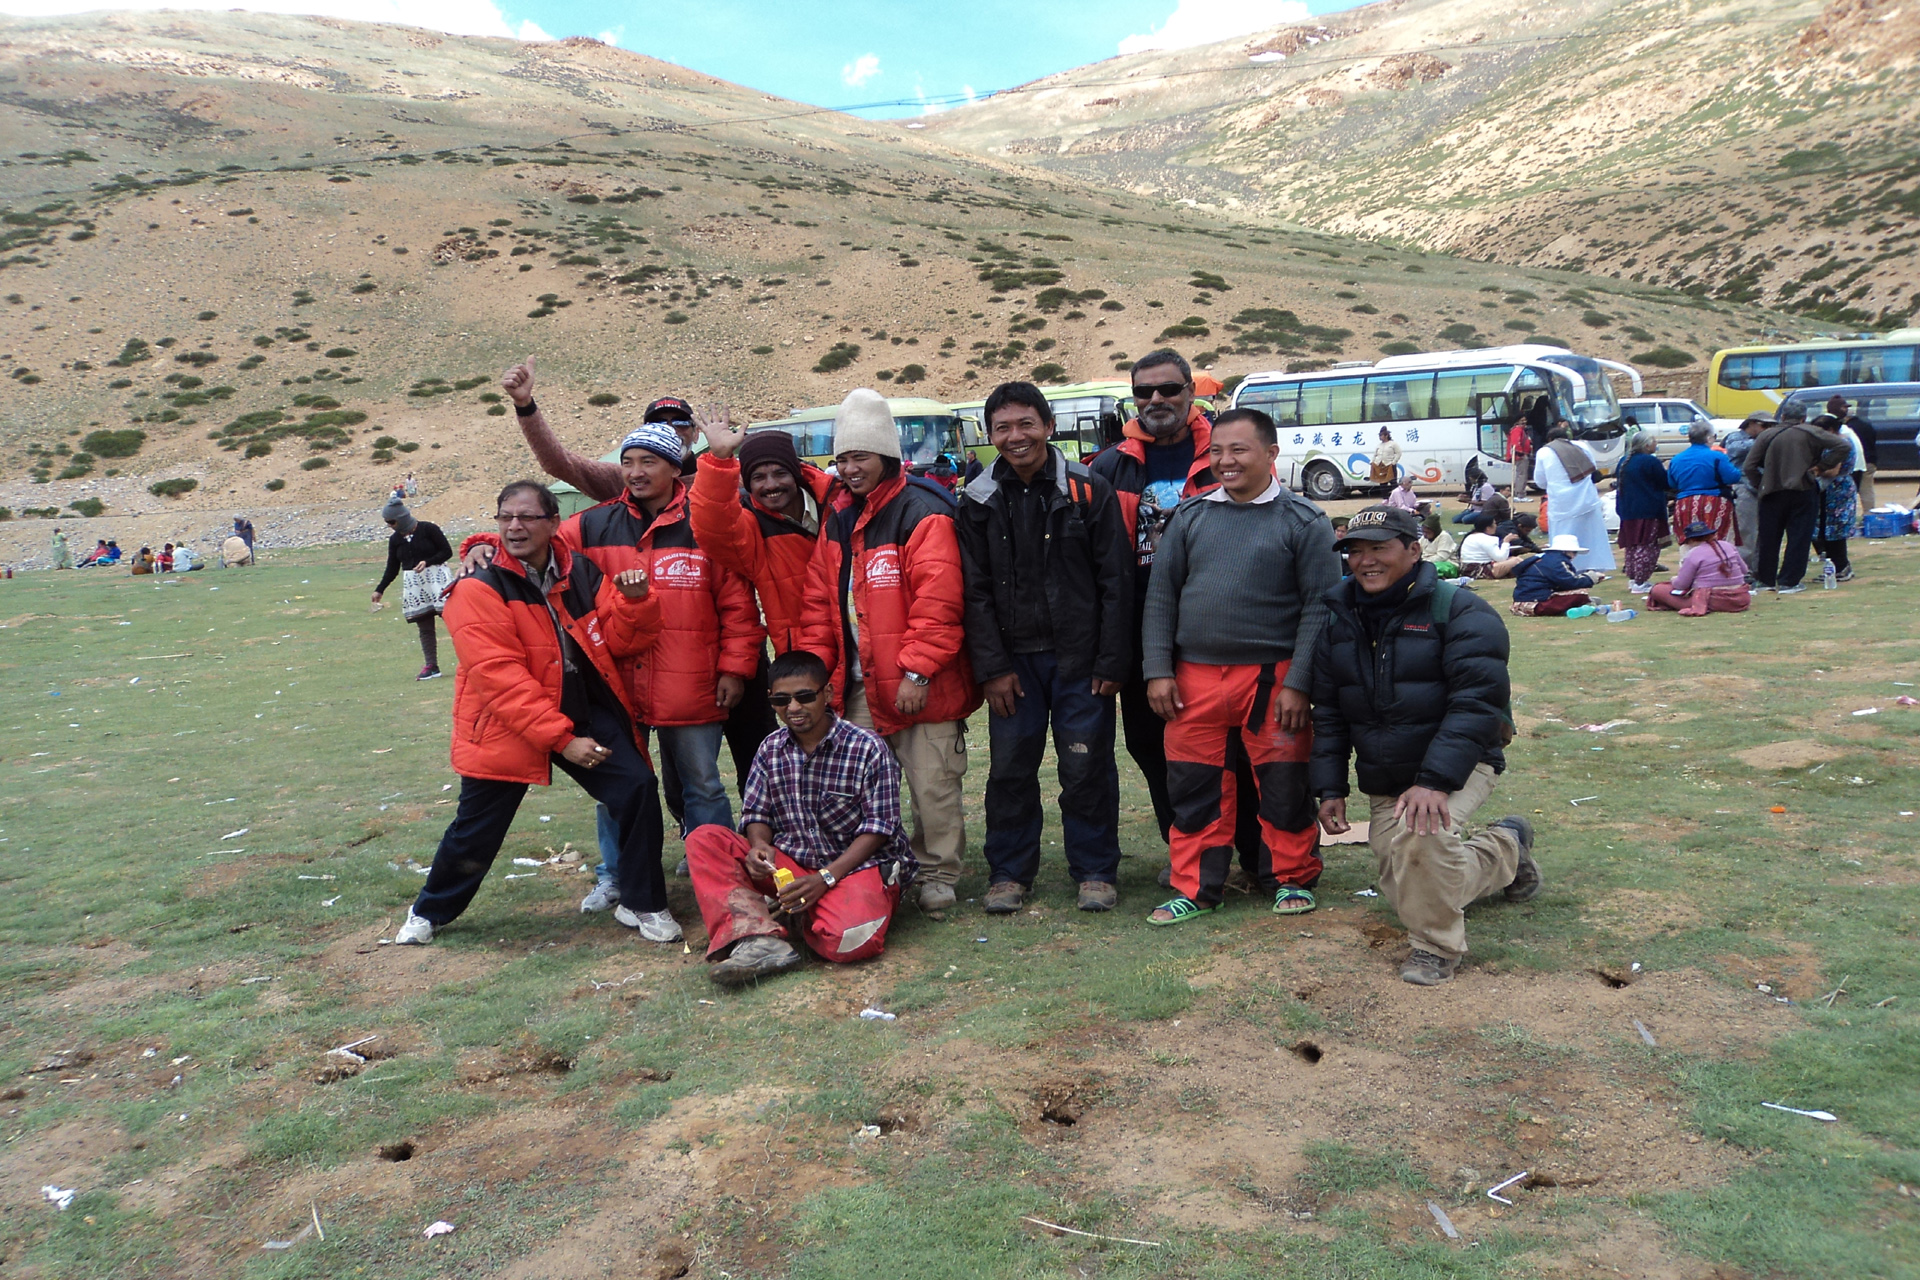 Mount Kailash Yatra